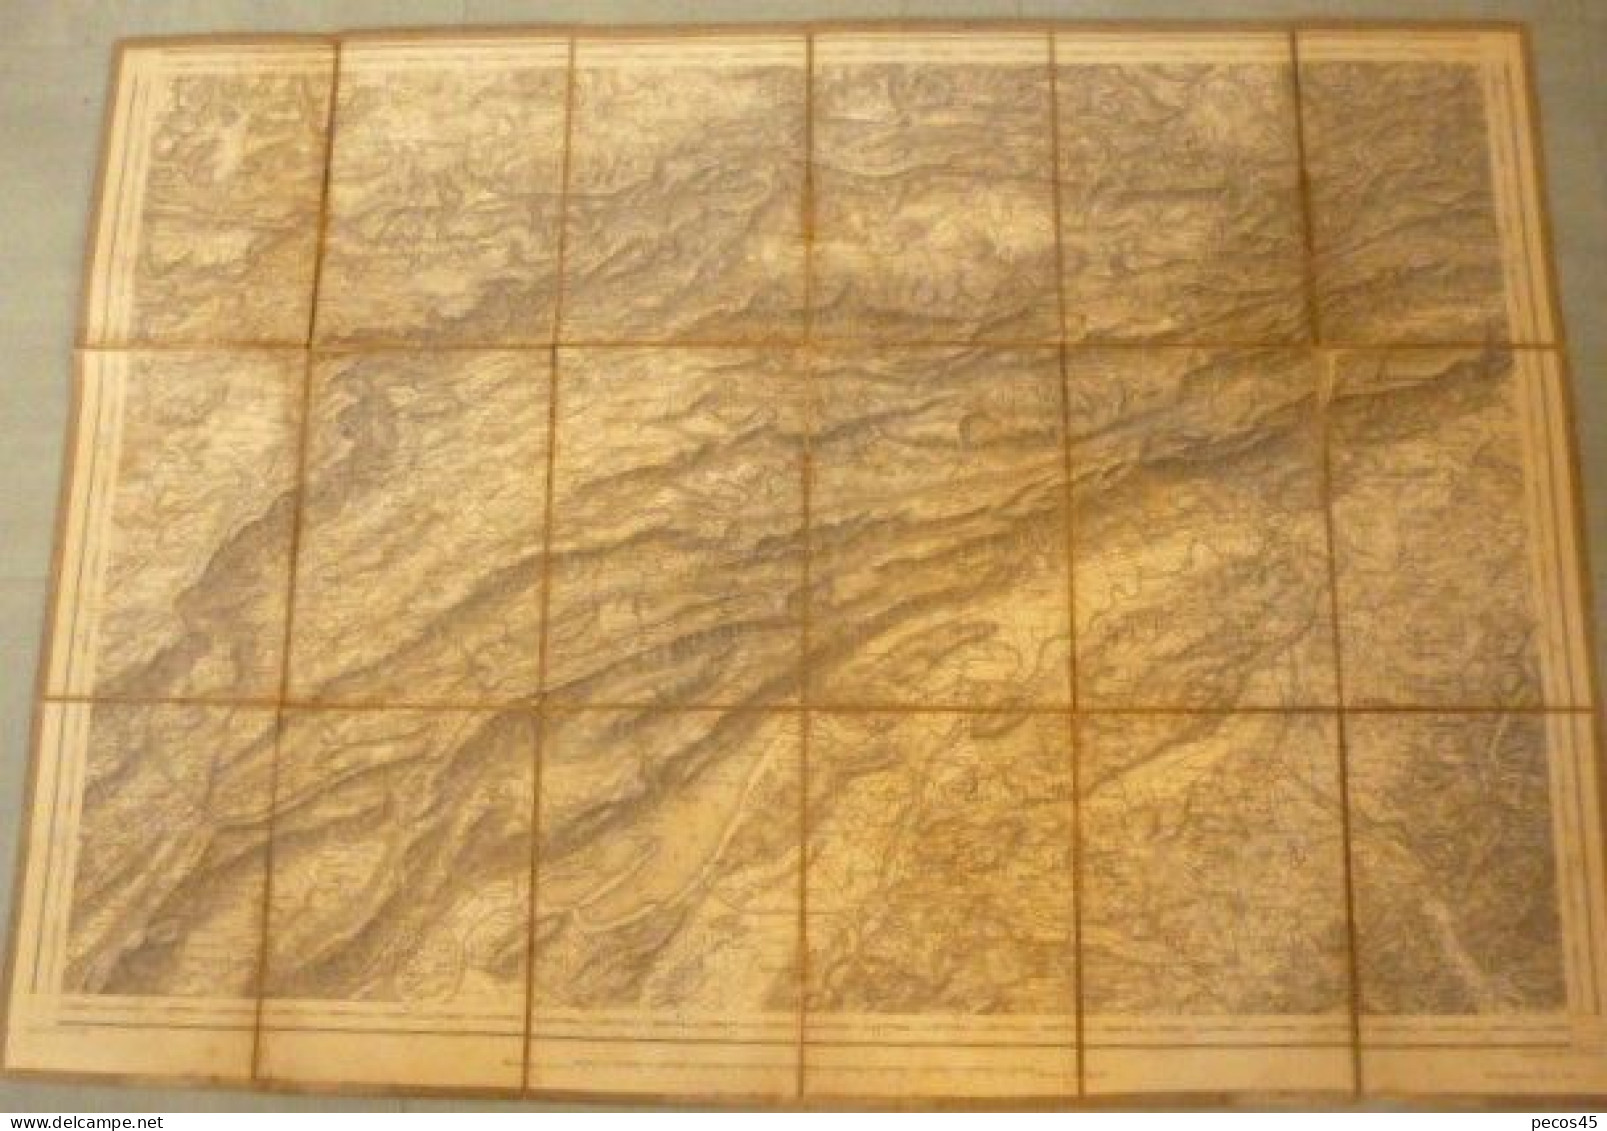 Carte Entoilée De SUISSE : Du Lac De BIELLE Et SOLOTHEURN Jusqu'à DELEMONT Et PORRENTRUY - 1/100 000ème - 1887. - Topographische Karten